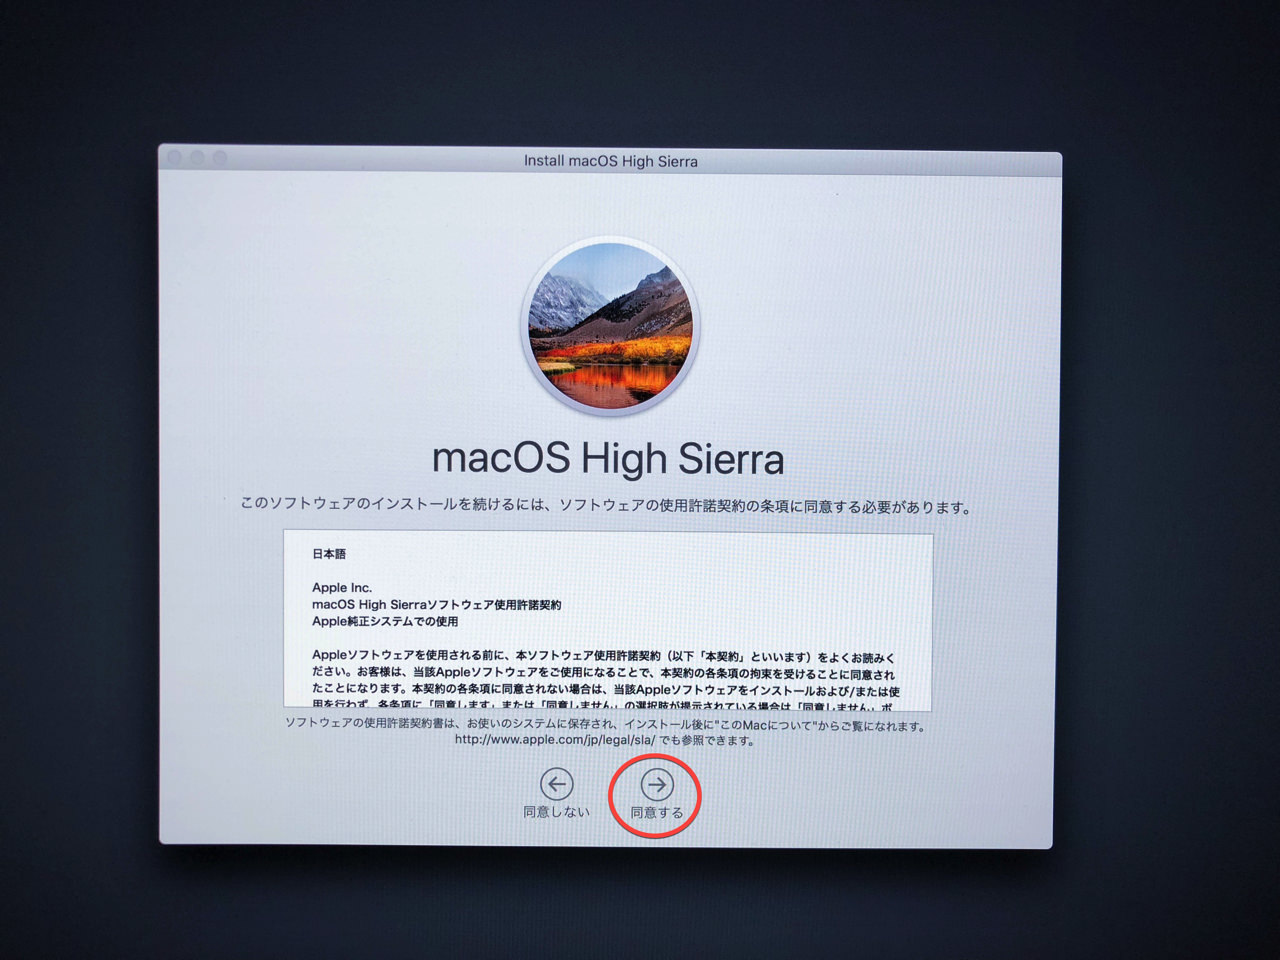 macOS High Sierra ソフトウェア使用許諾契約に同意する